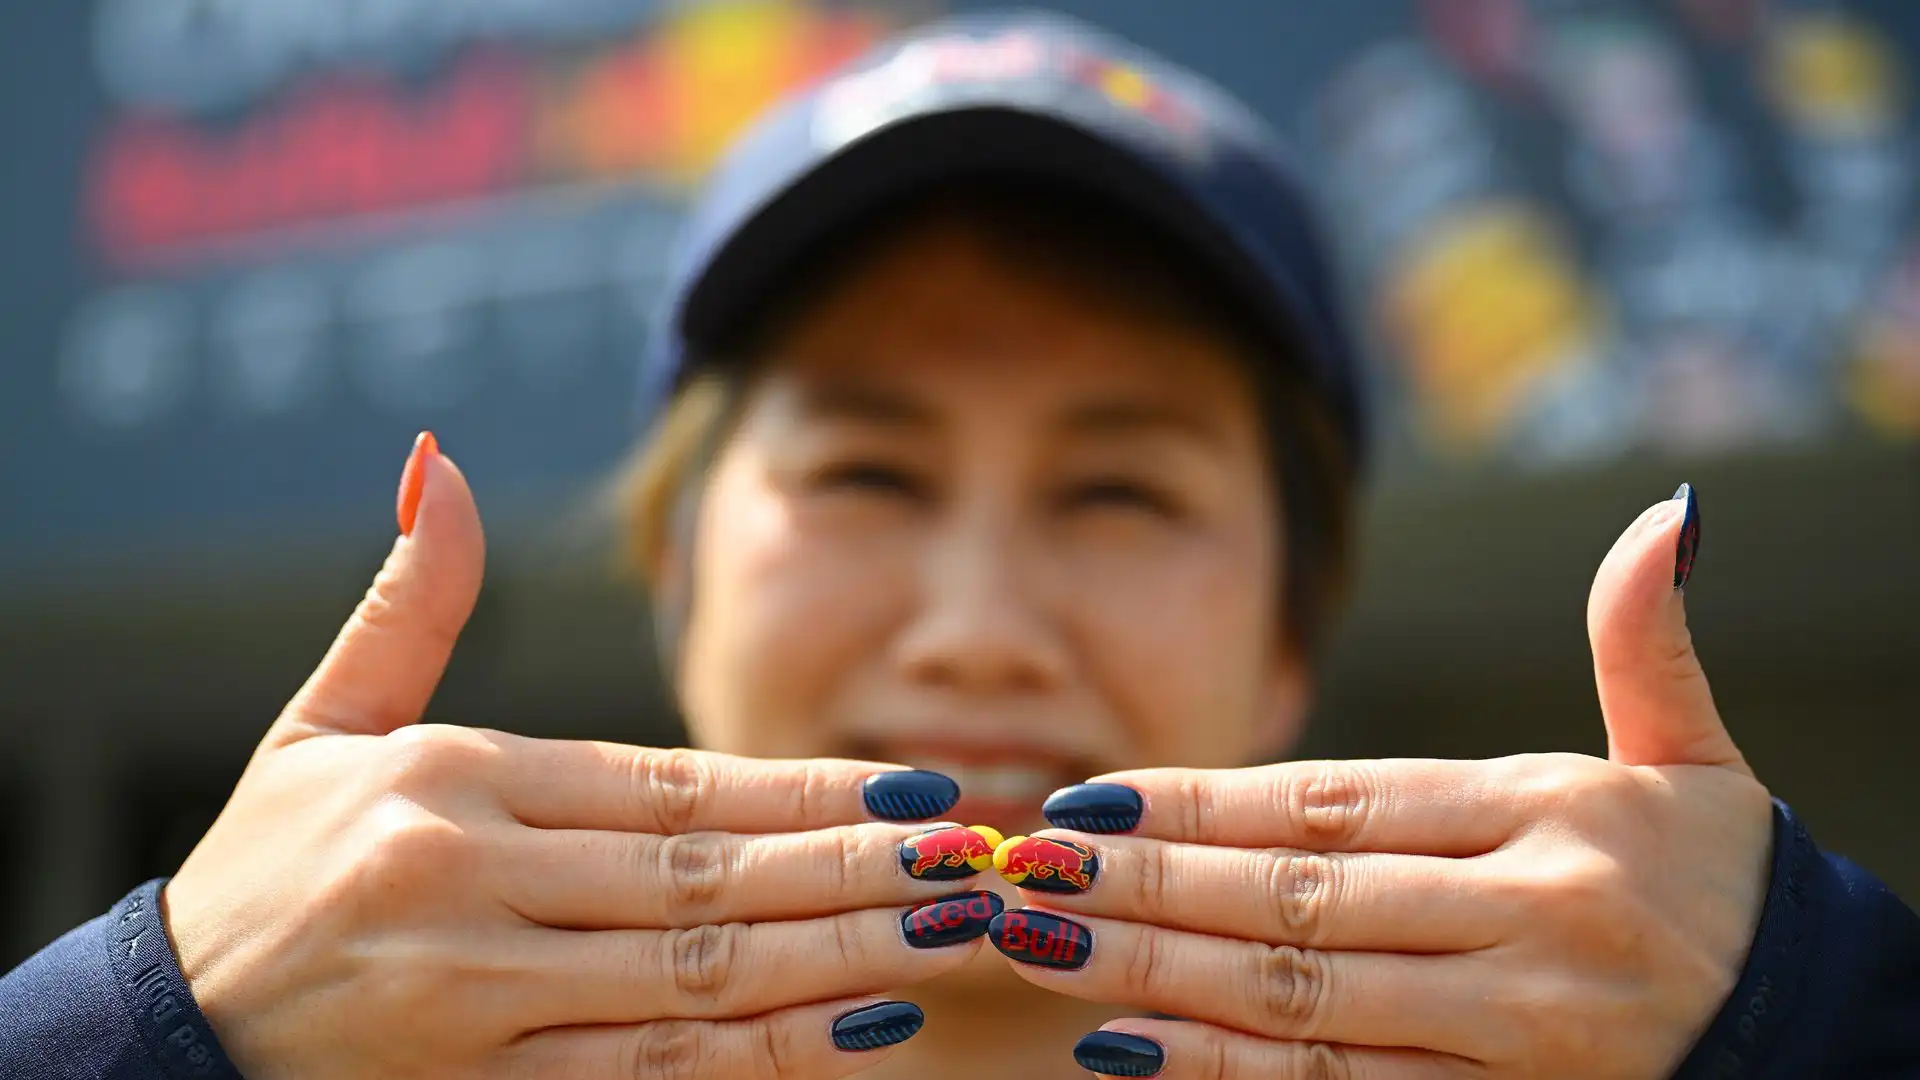 Quest'altra tifosa mostra le sue unghie colorate in stile Red Bull